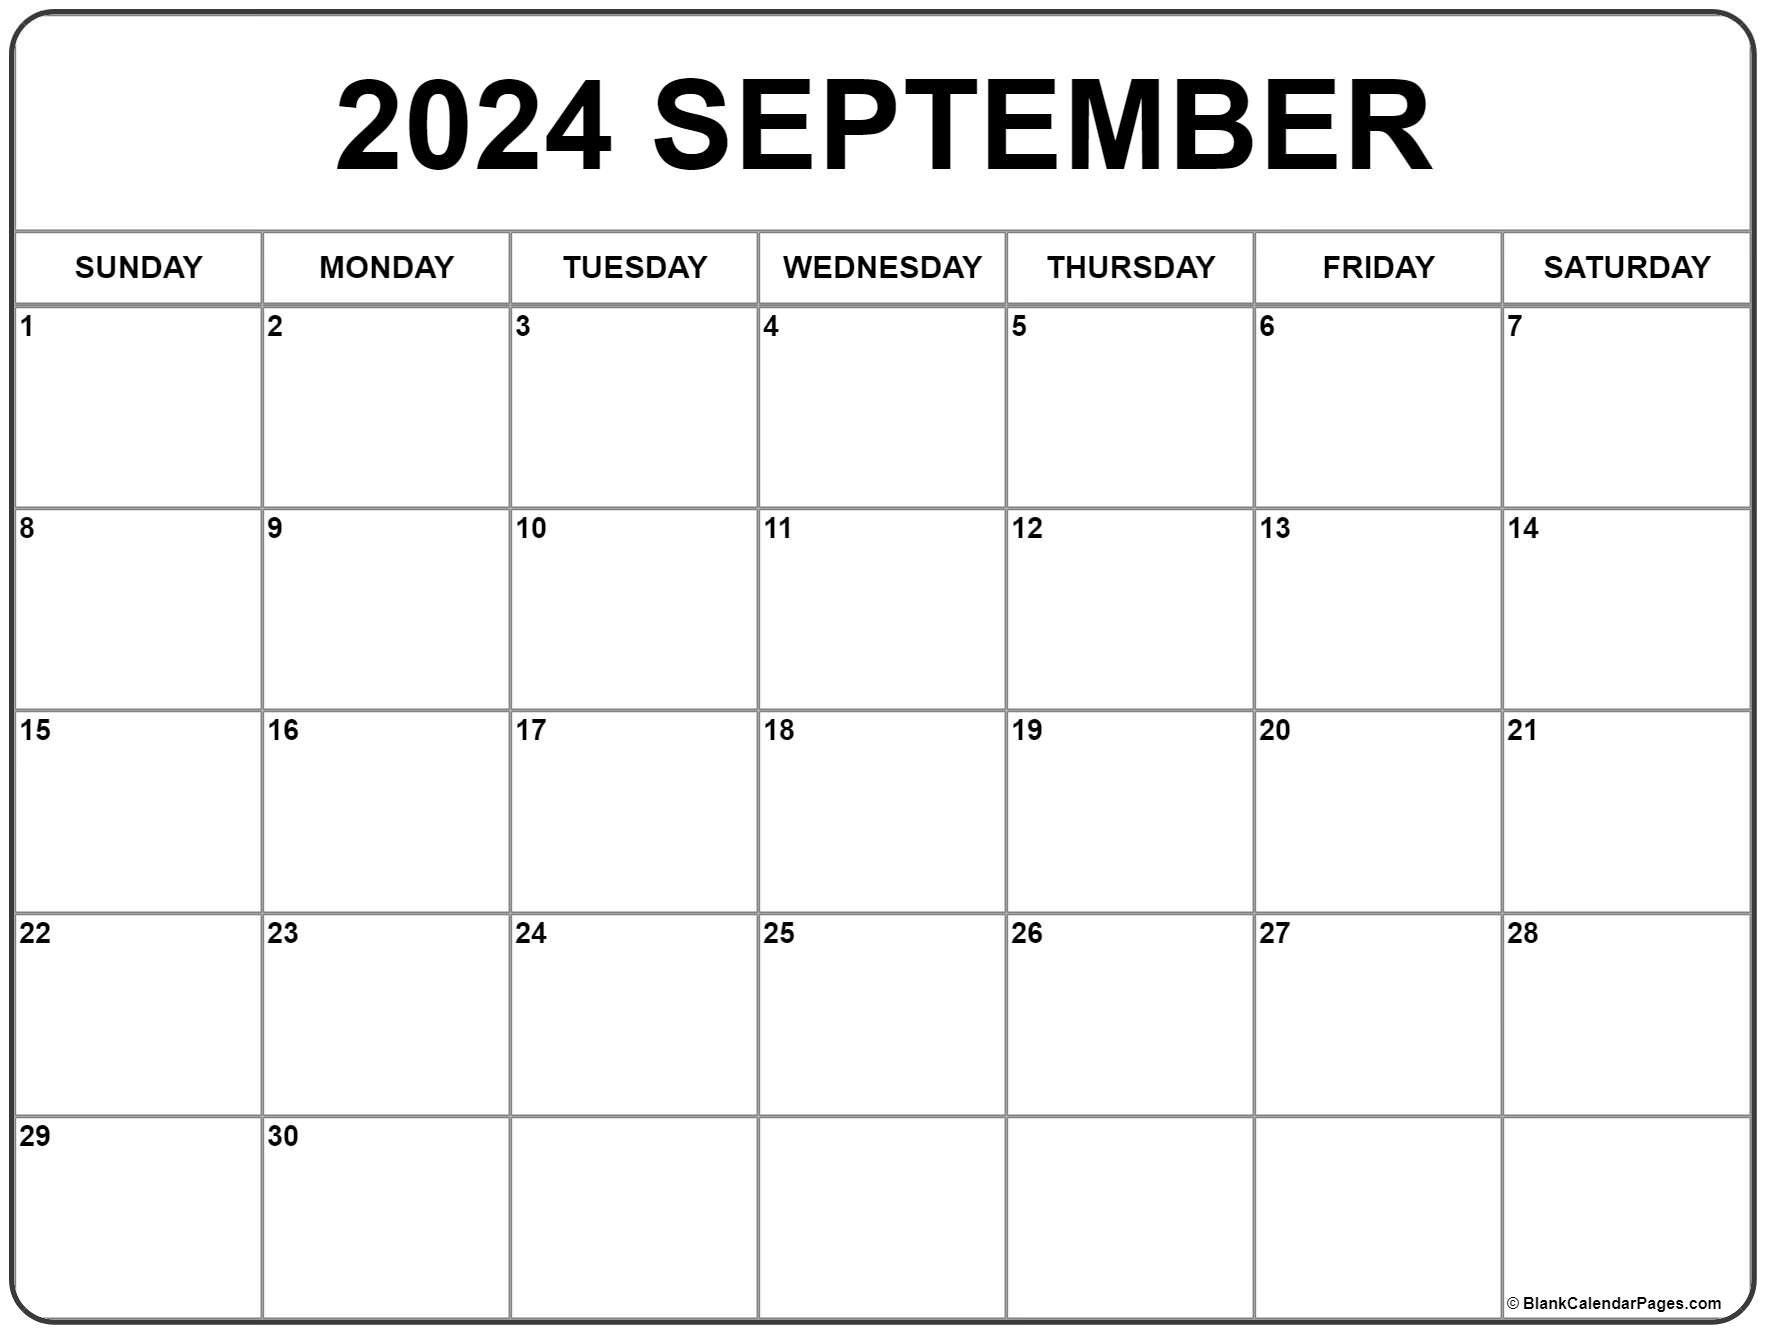 Print 2024 September Calendars Free Printable Check Dec 2024 Calendar